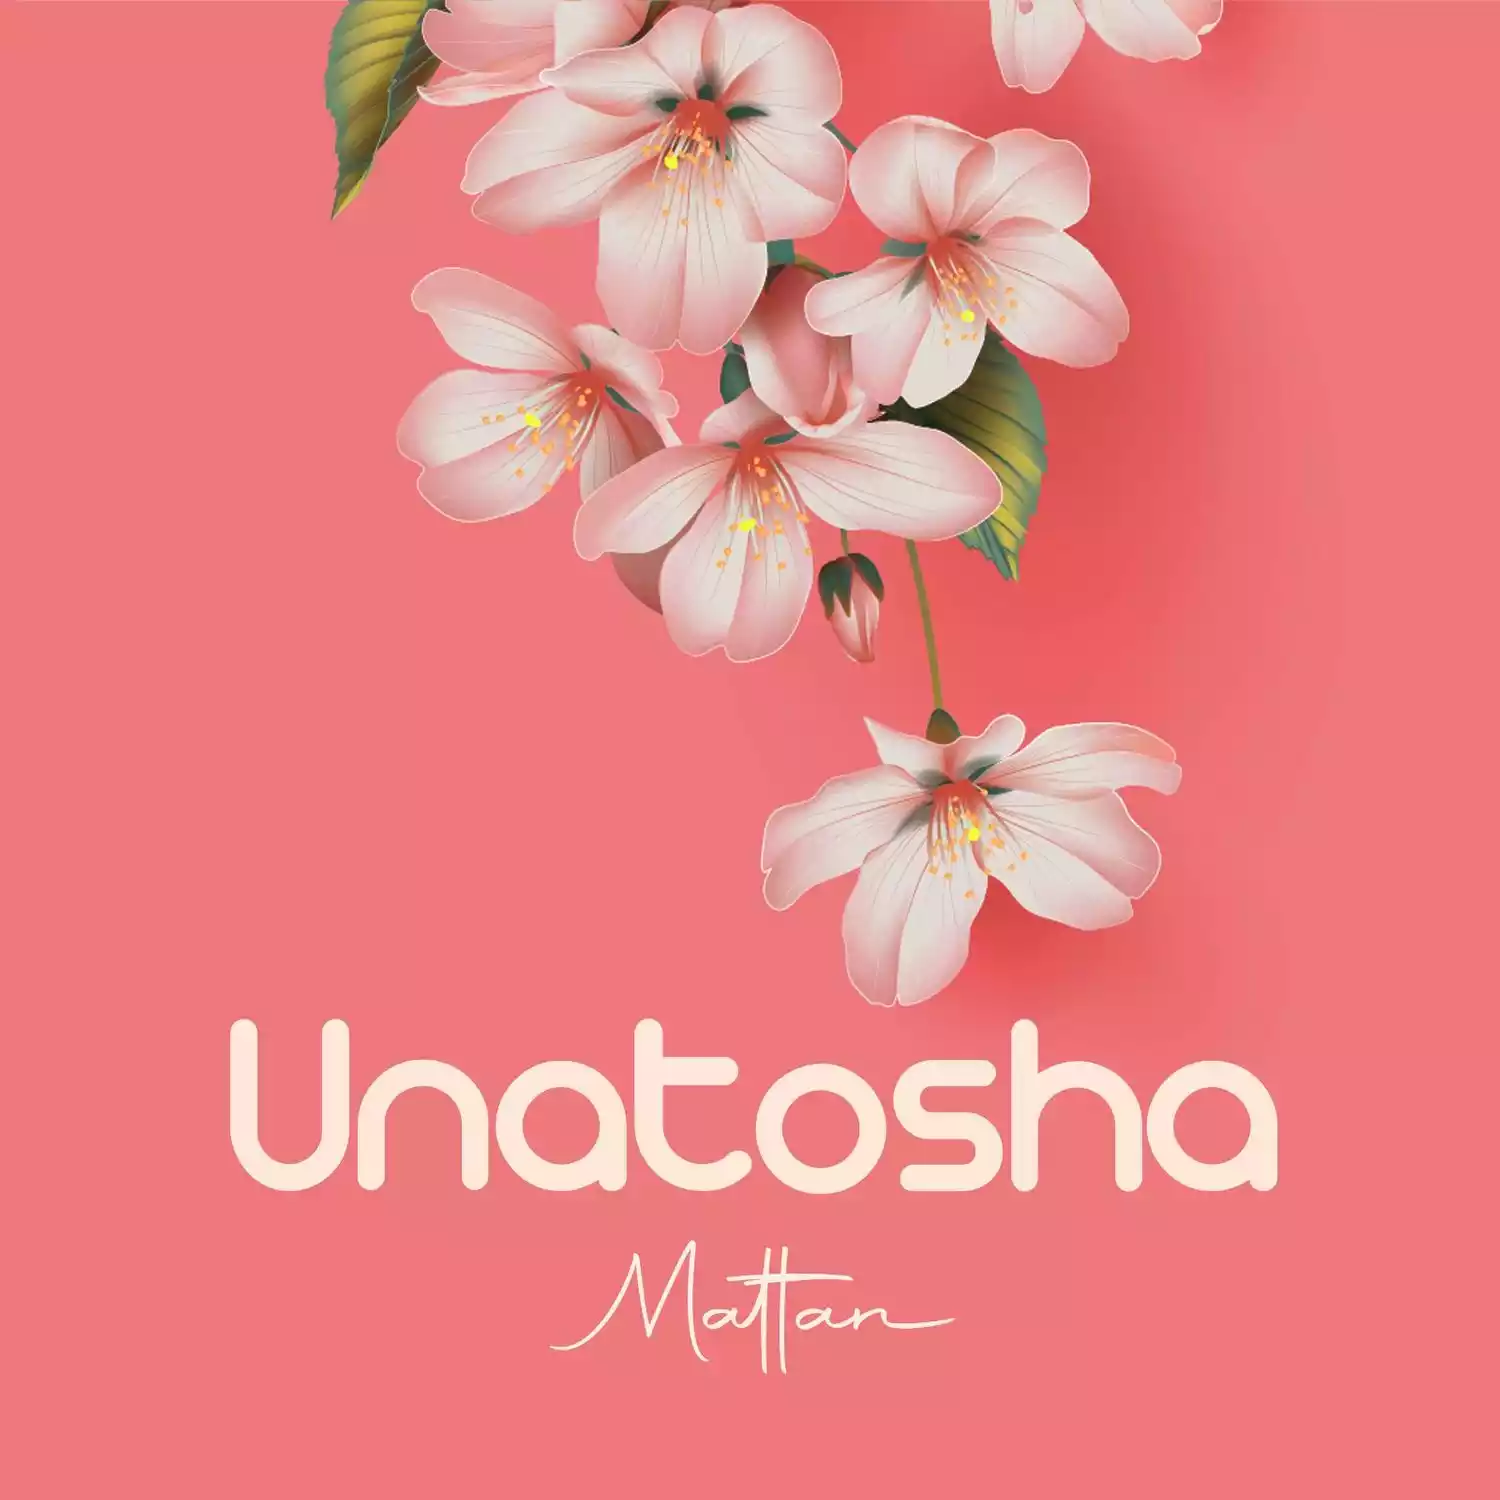 Mattan Unatosha Mp3 Download